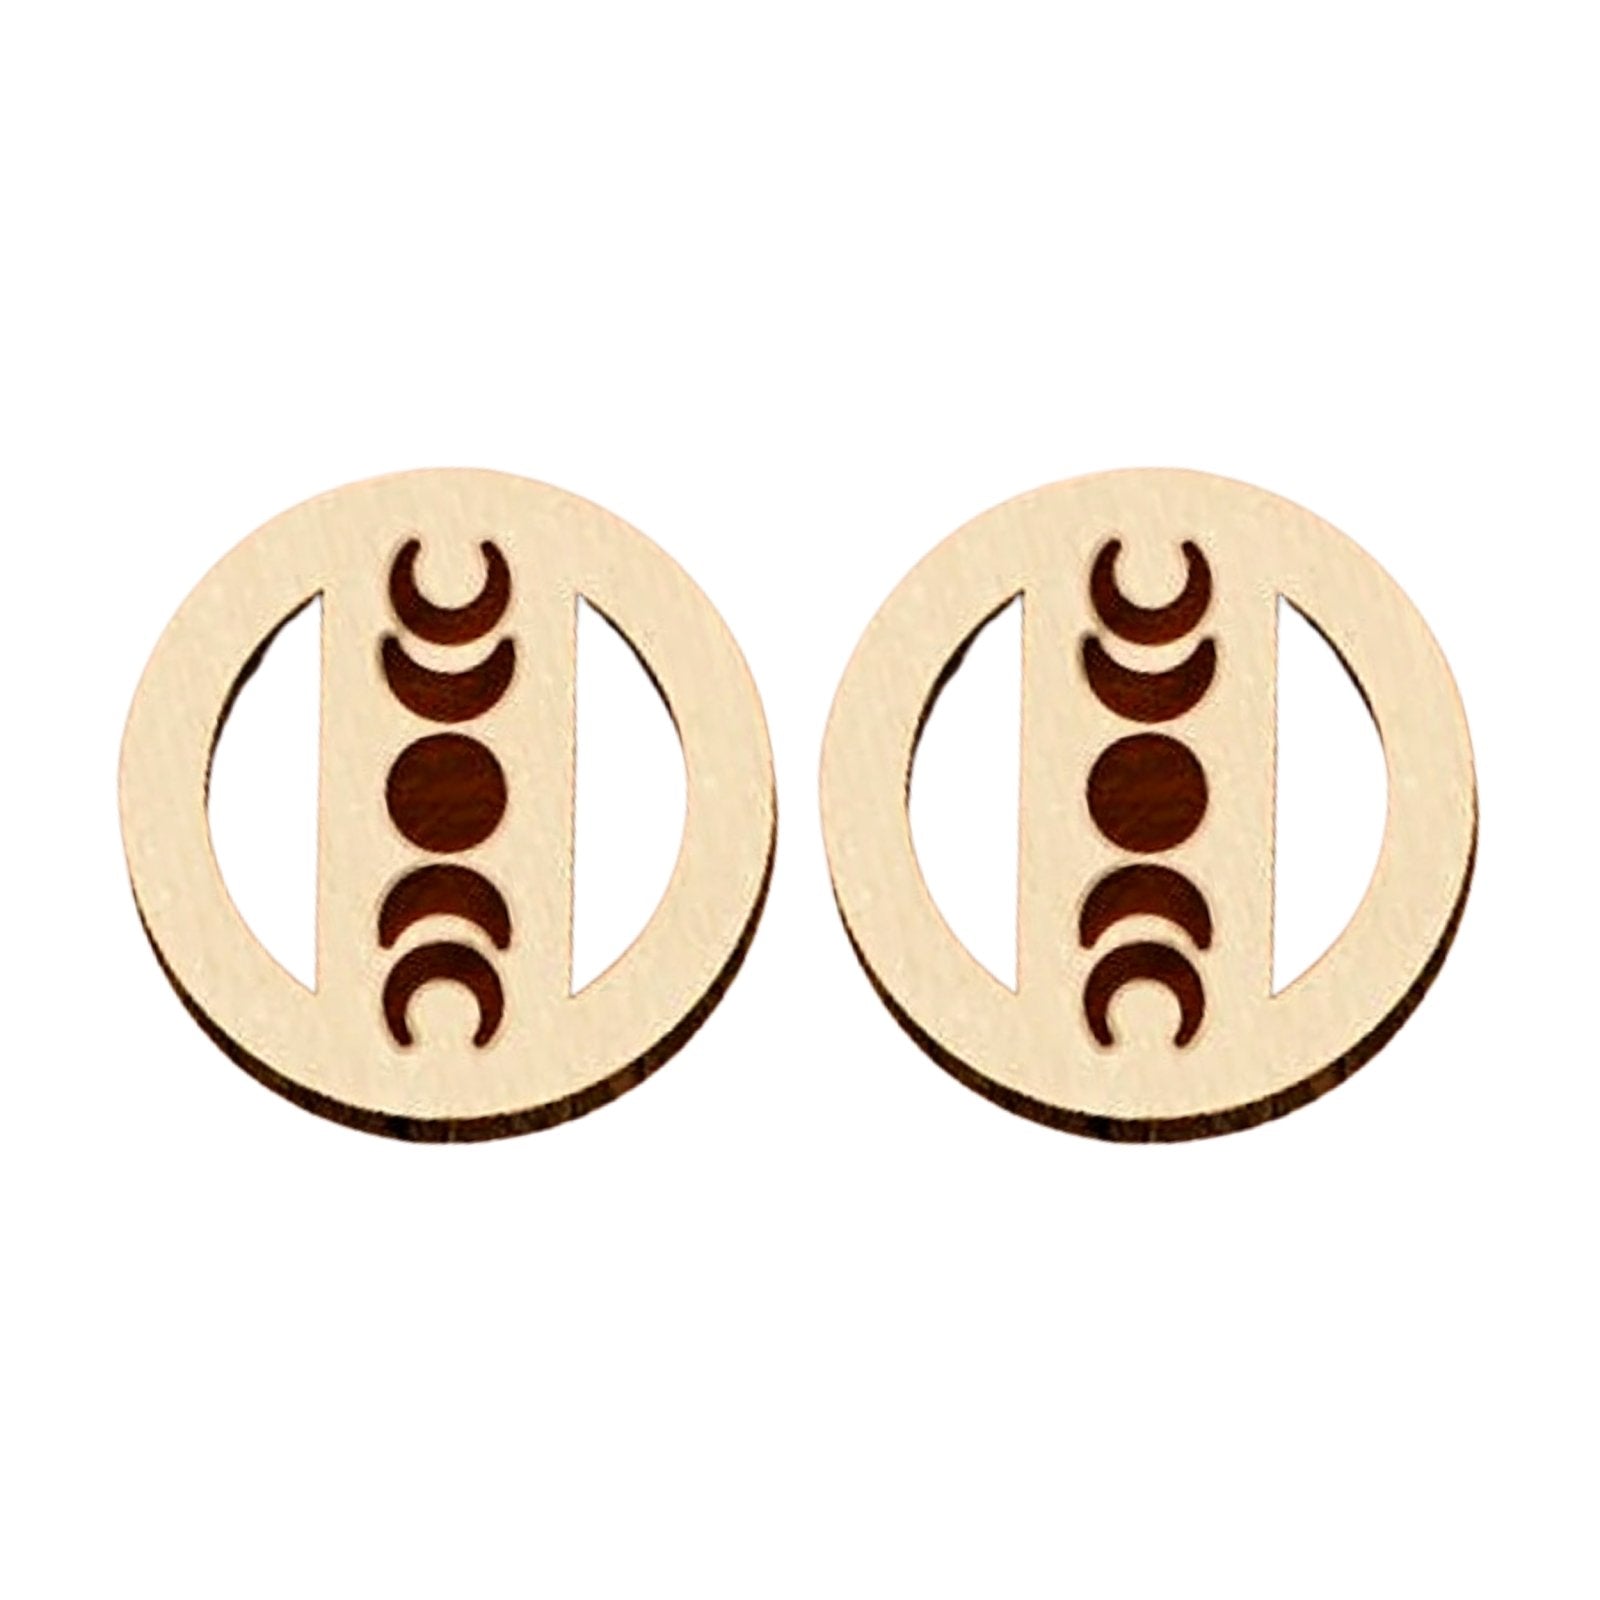 Wood Moon Phase Earrings - Melanie Golden Jewelry - earrings, stud, stud earrings